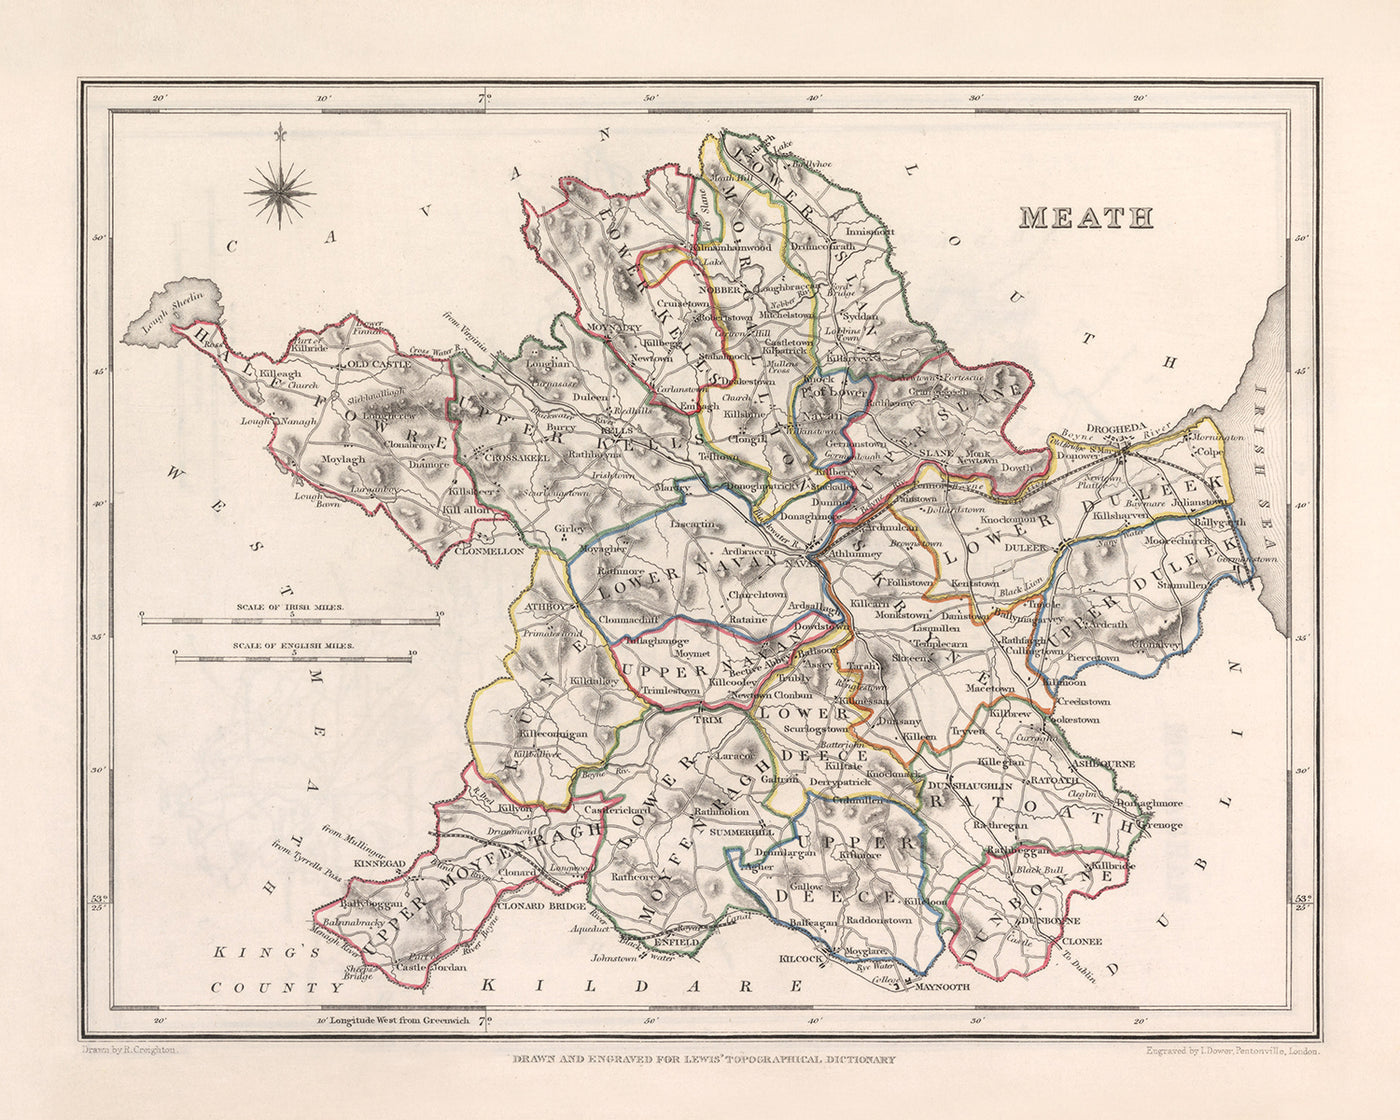 Mapa antiguo del condado de Meath por Samuel Lewis, 1844: Navan, Trim, Kells, Athboy, Hill of Tara